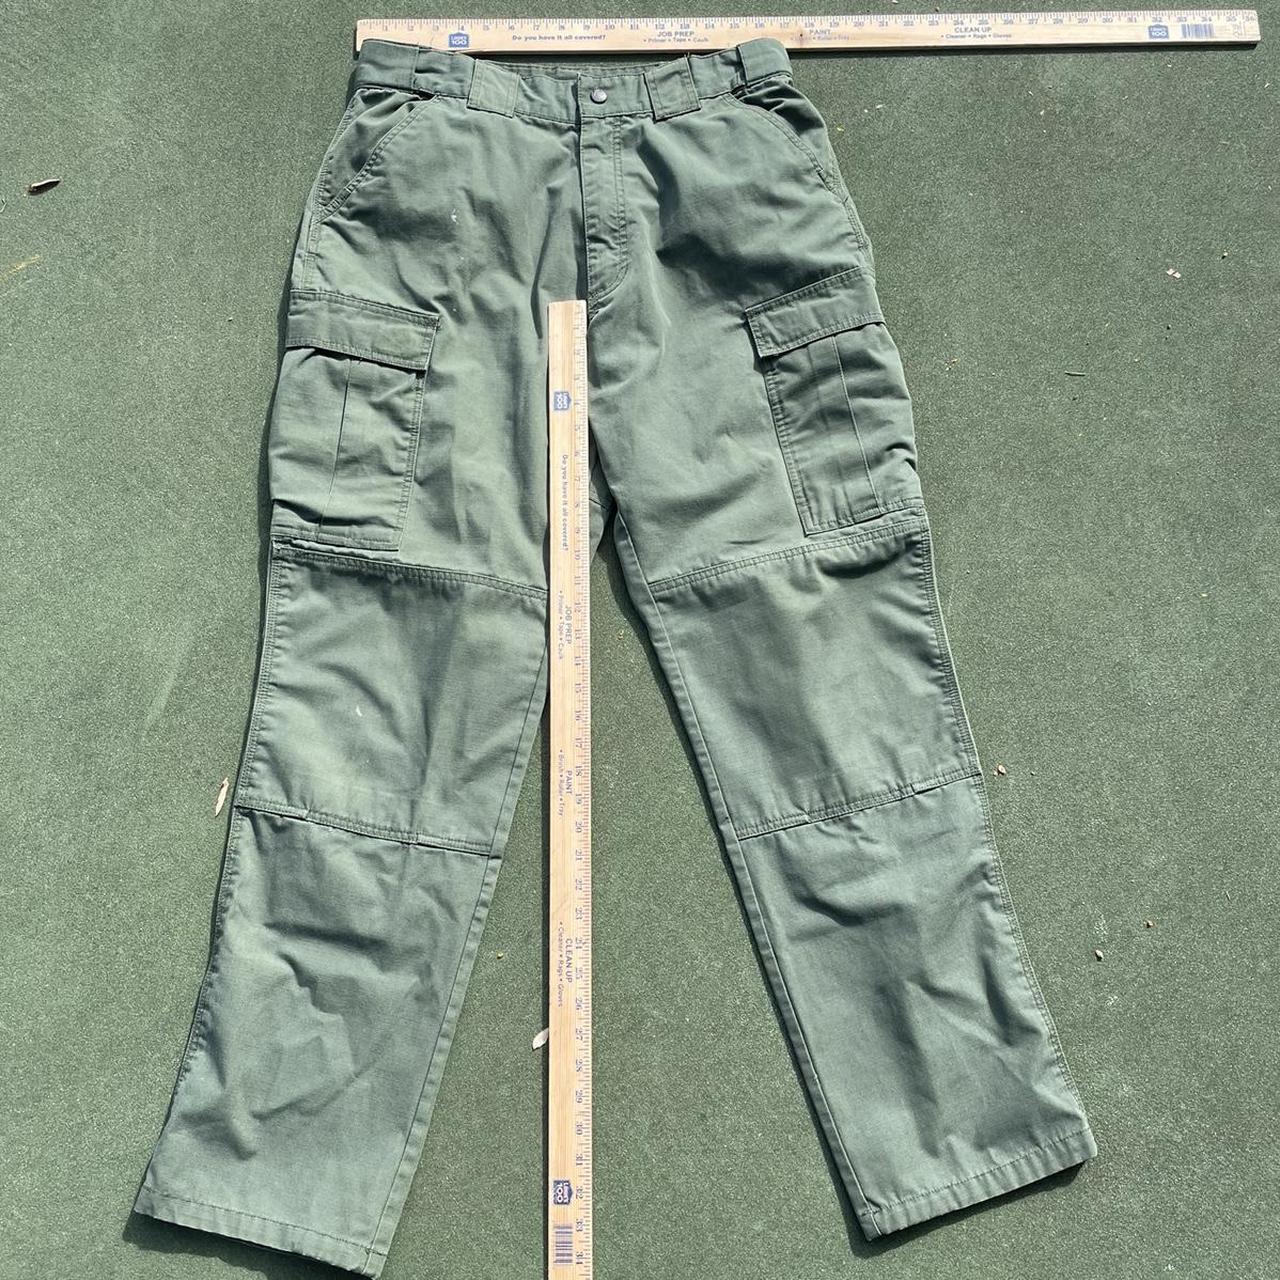 Vintage Olive Green Cargo Pants Waist 35 Length... - Depop